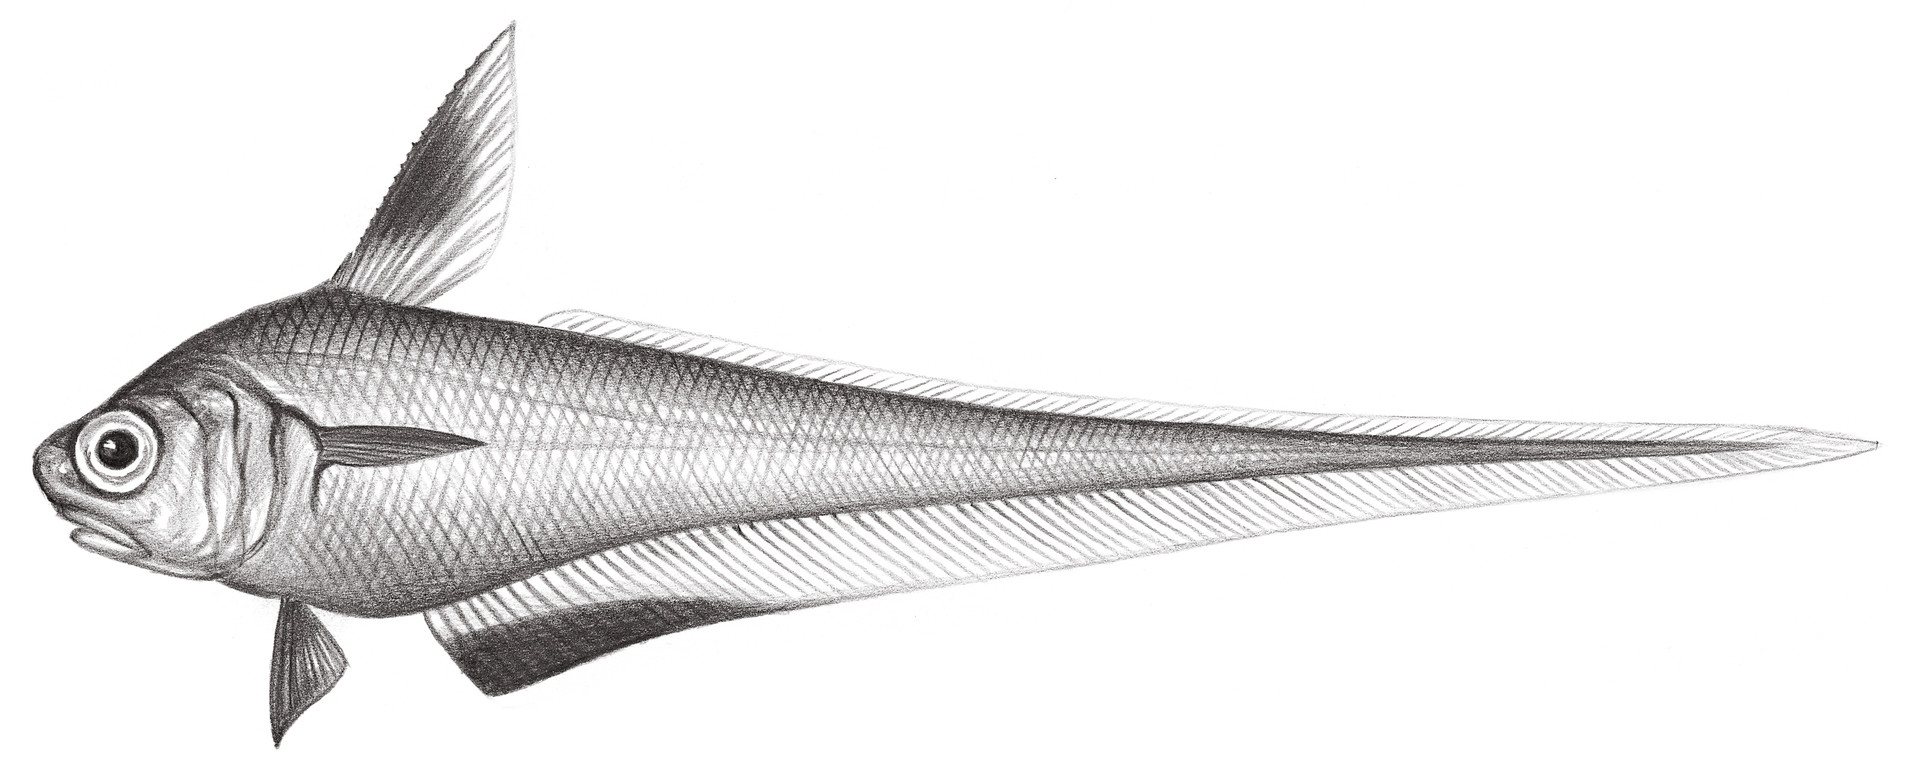 585.	黑緣梭鱈 Lucigadus nigromarginata (Smith & Radcliffe, 1912)